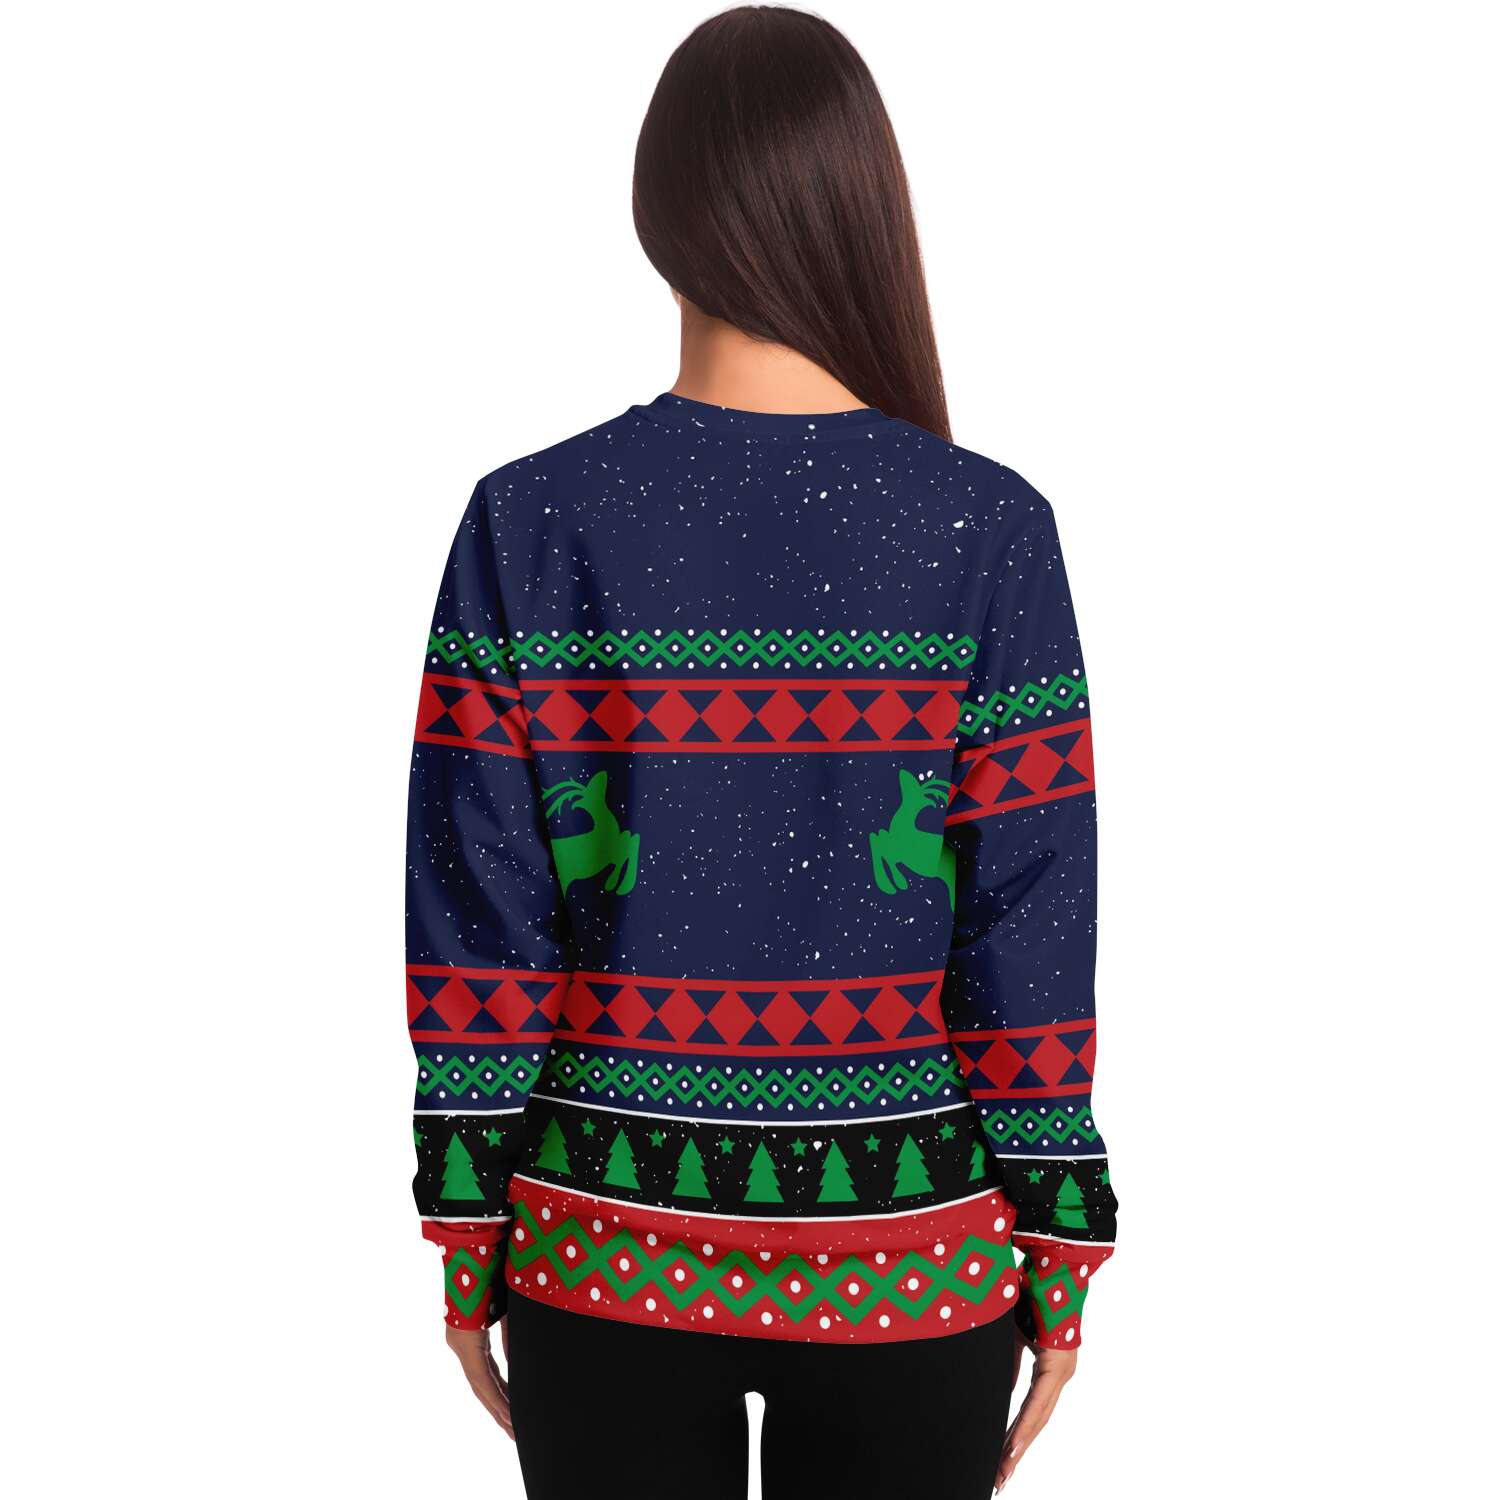 Kate McEnroe New York What the Elf Ugly Christmas SweaterSweatshirtSBSWF_D - 0905 - XS